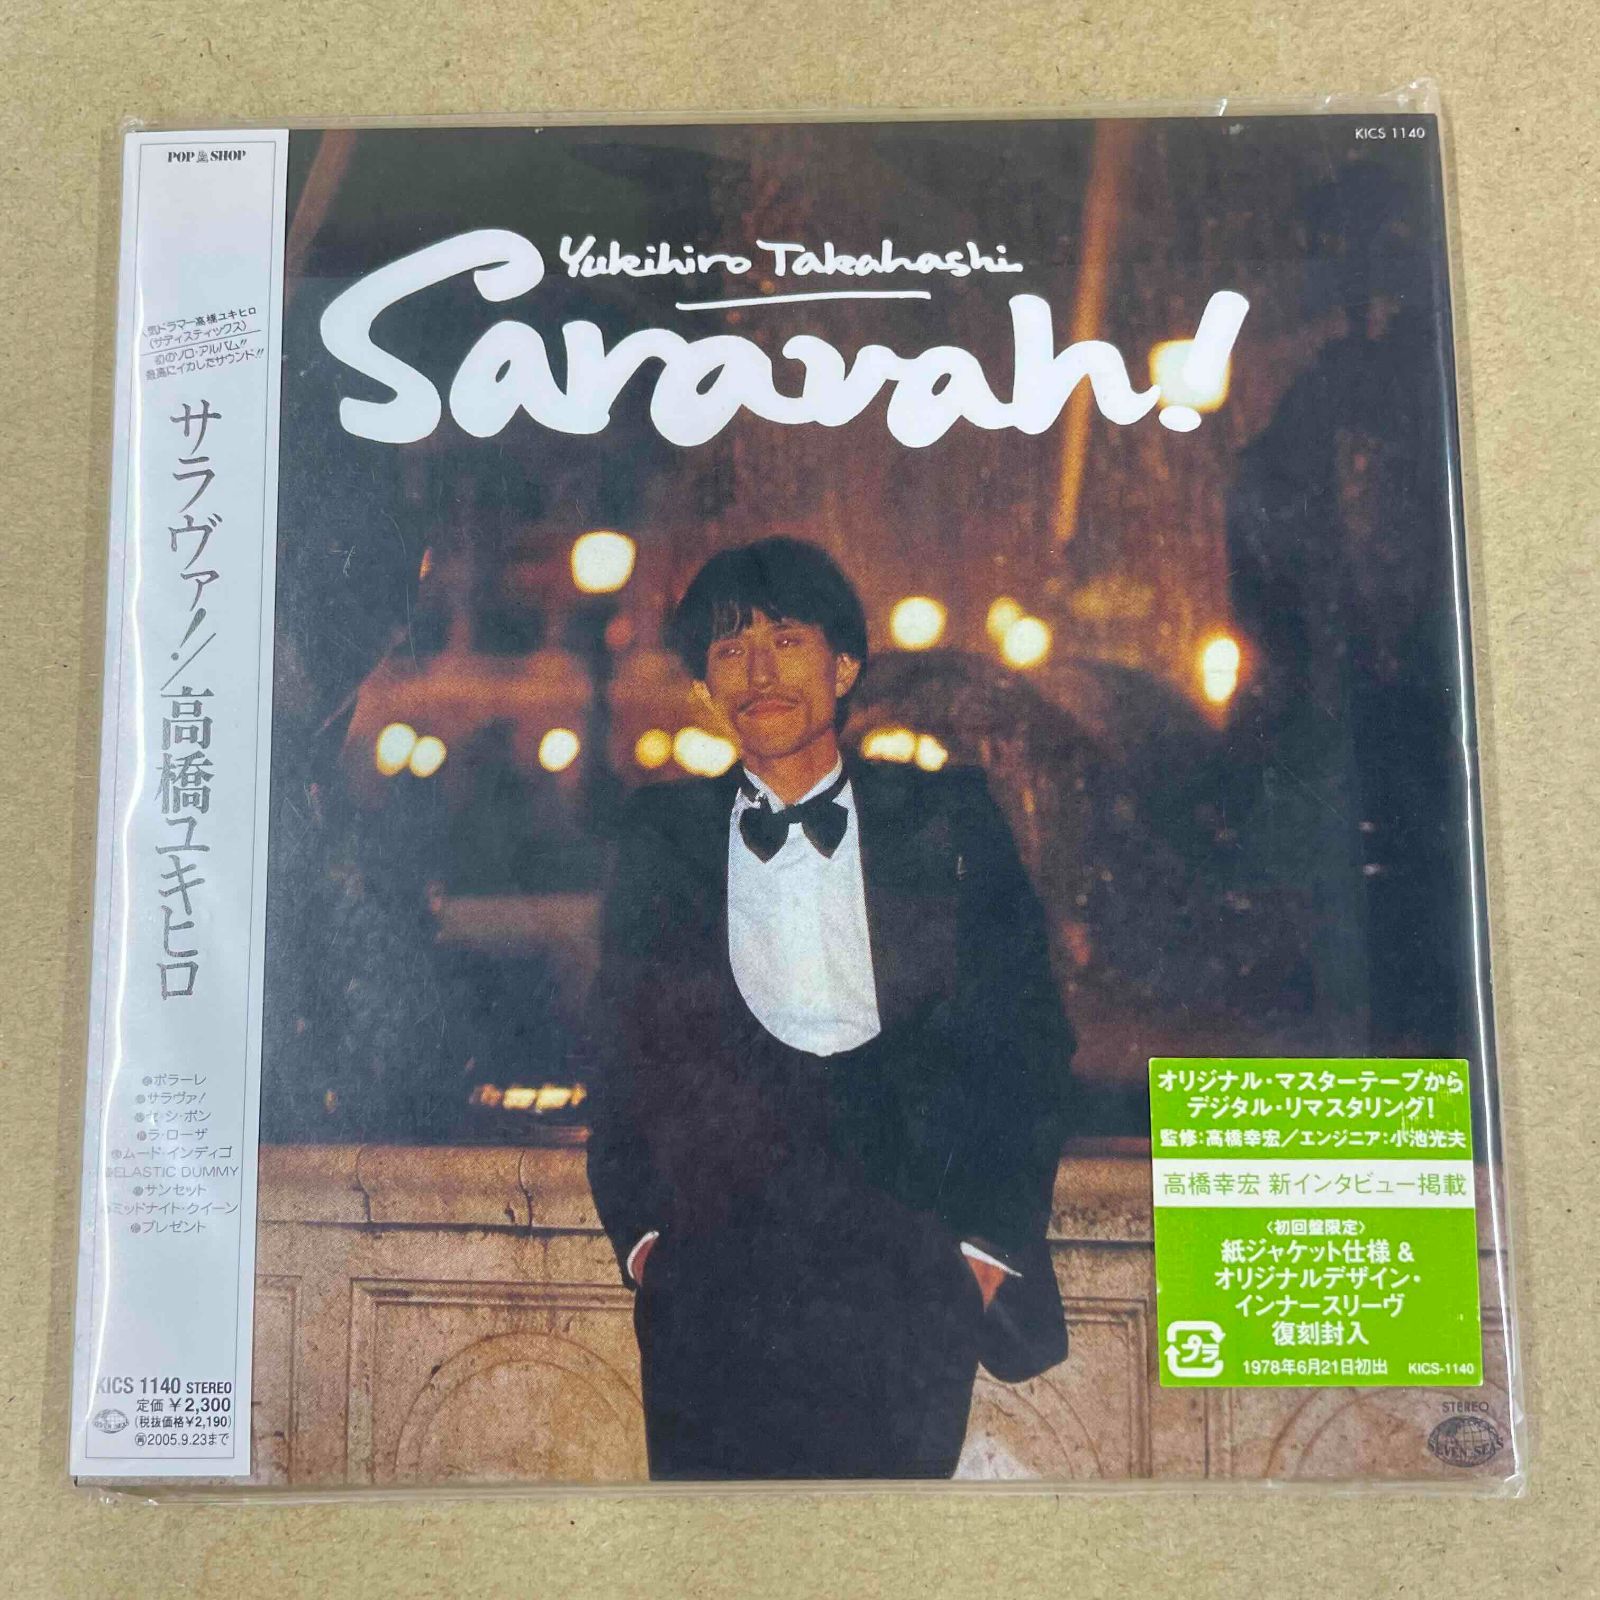 Saravah Saravah! 高橋幸宏 レコード - レコード